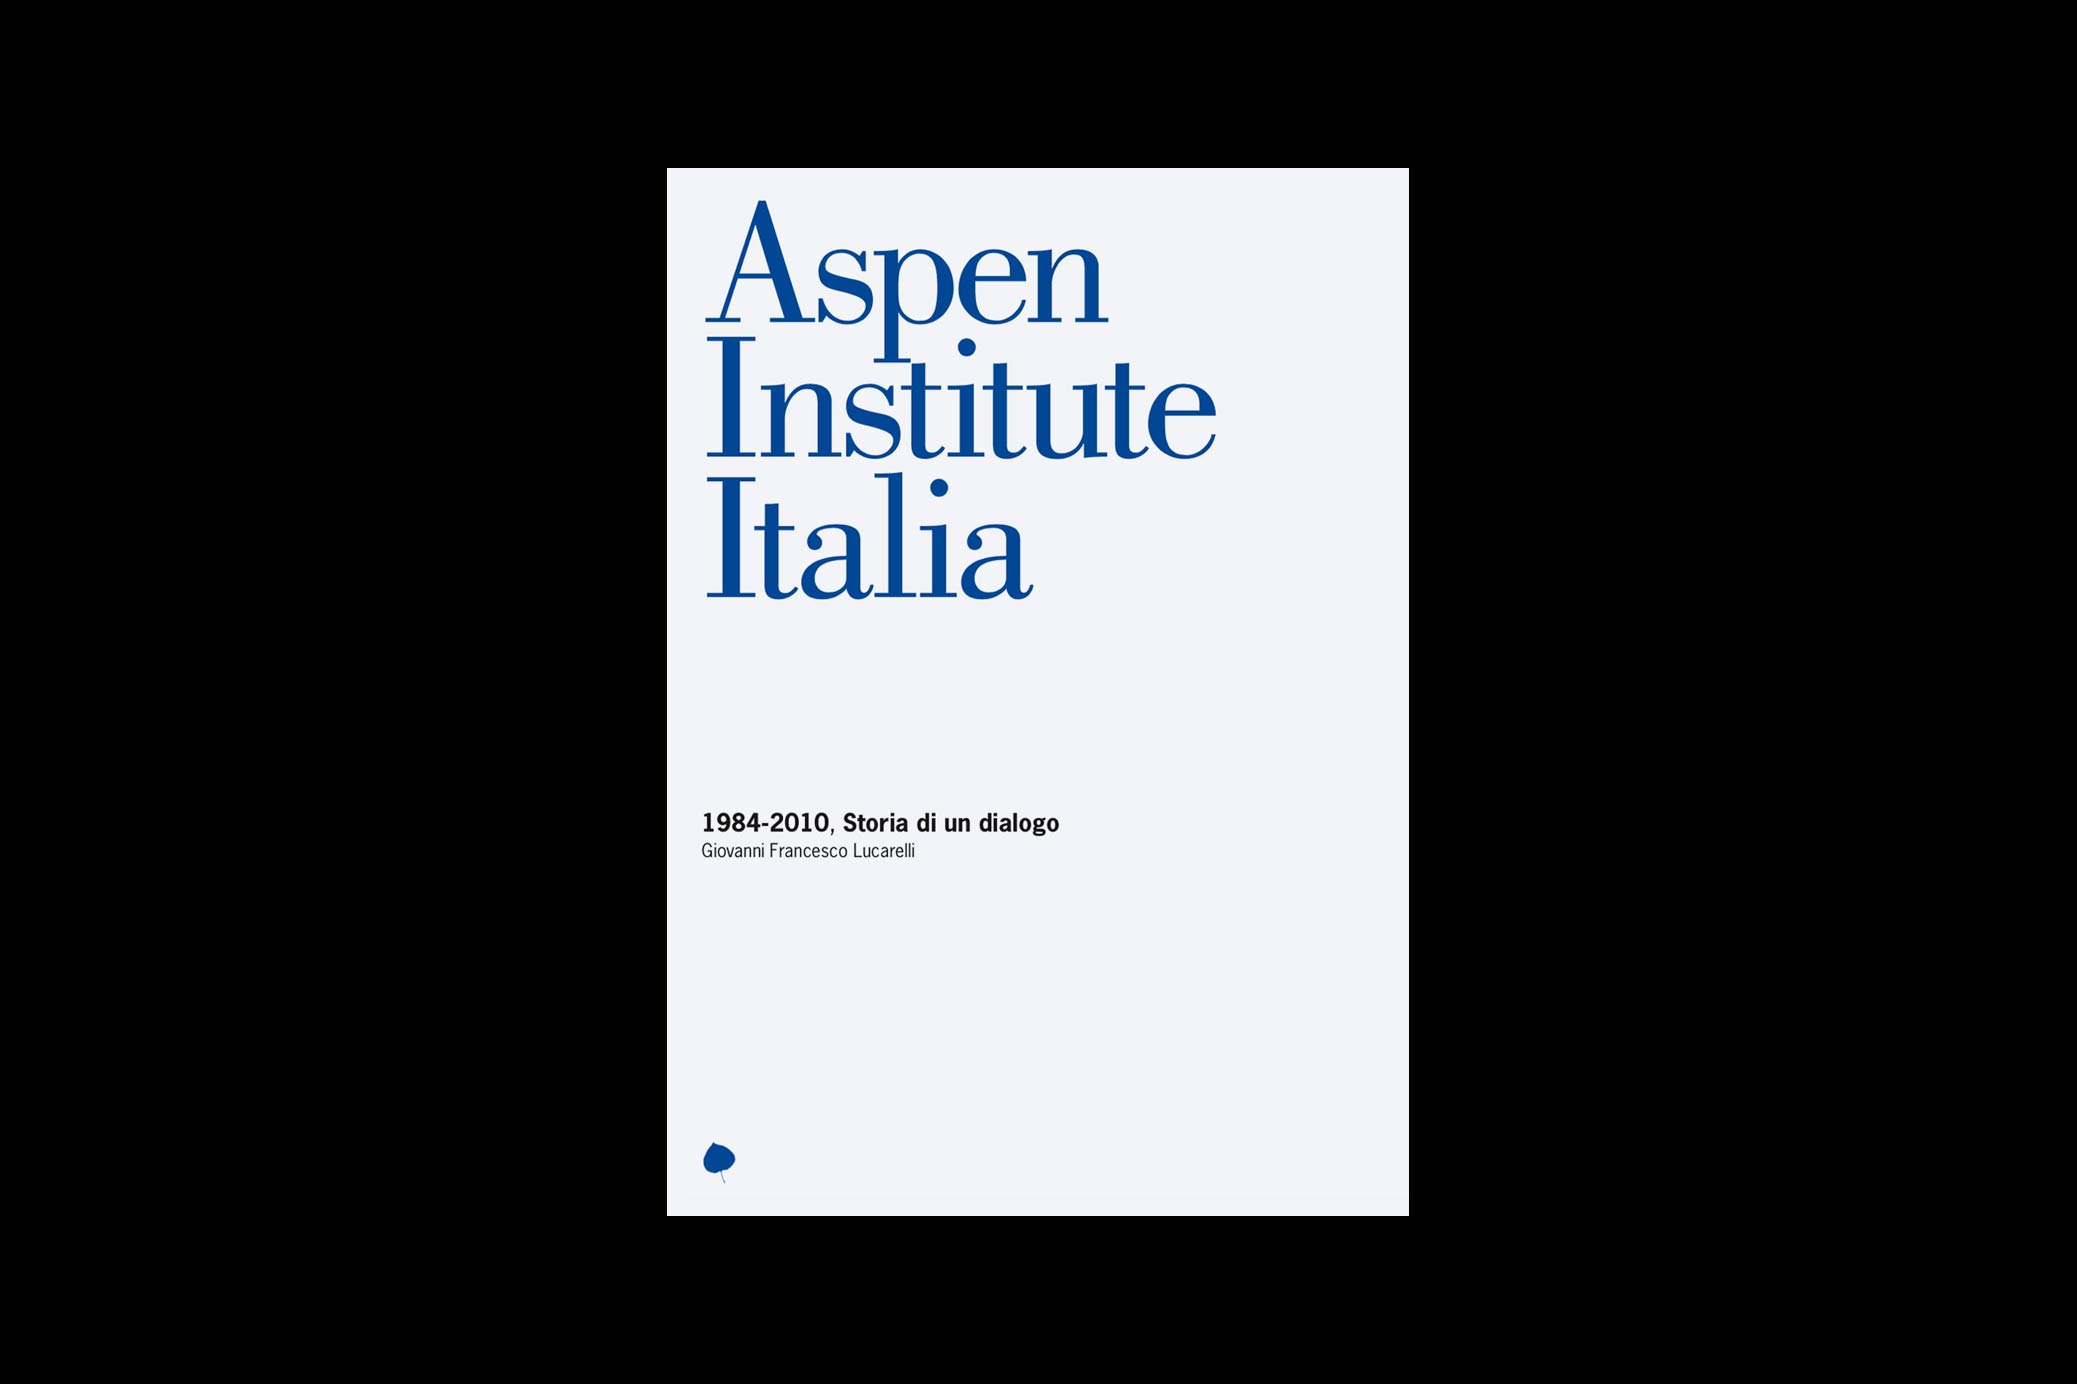 aspen institute italia storia dialogo